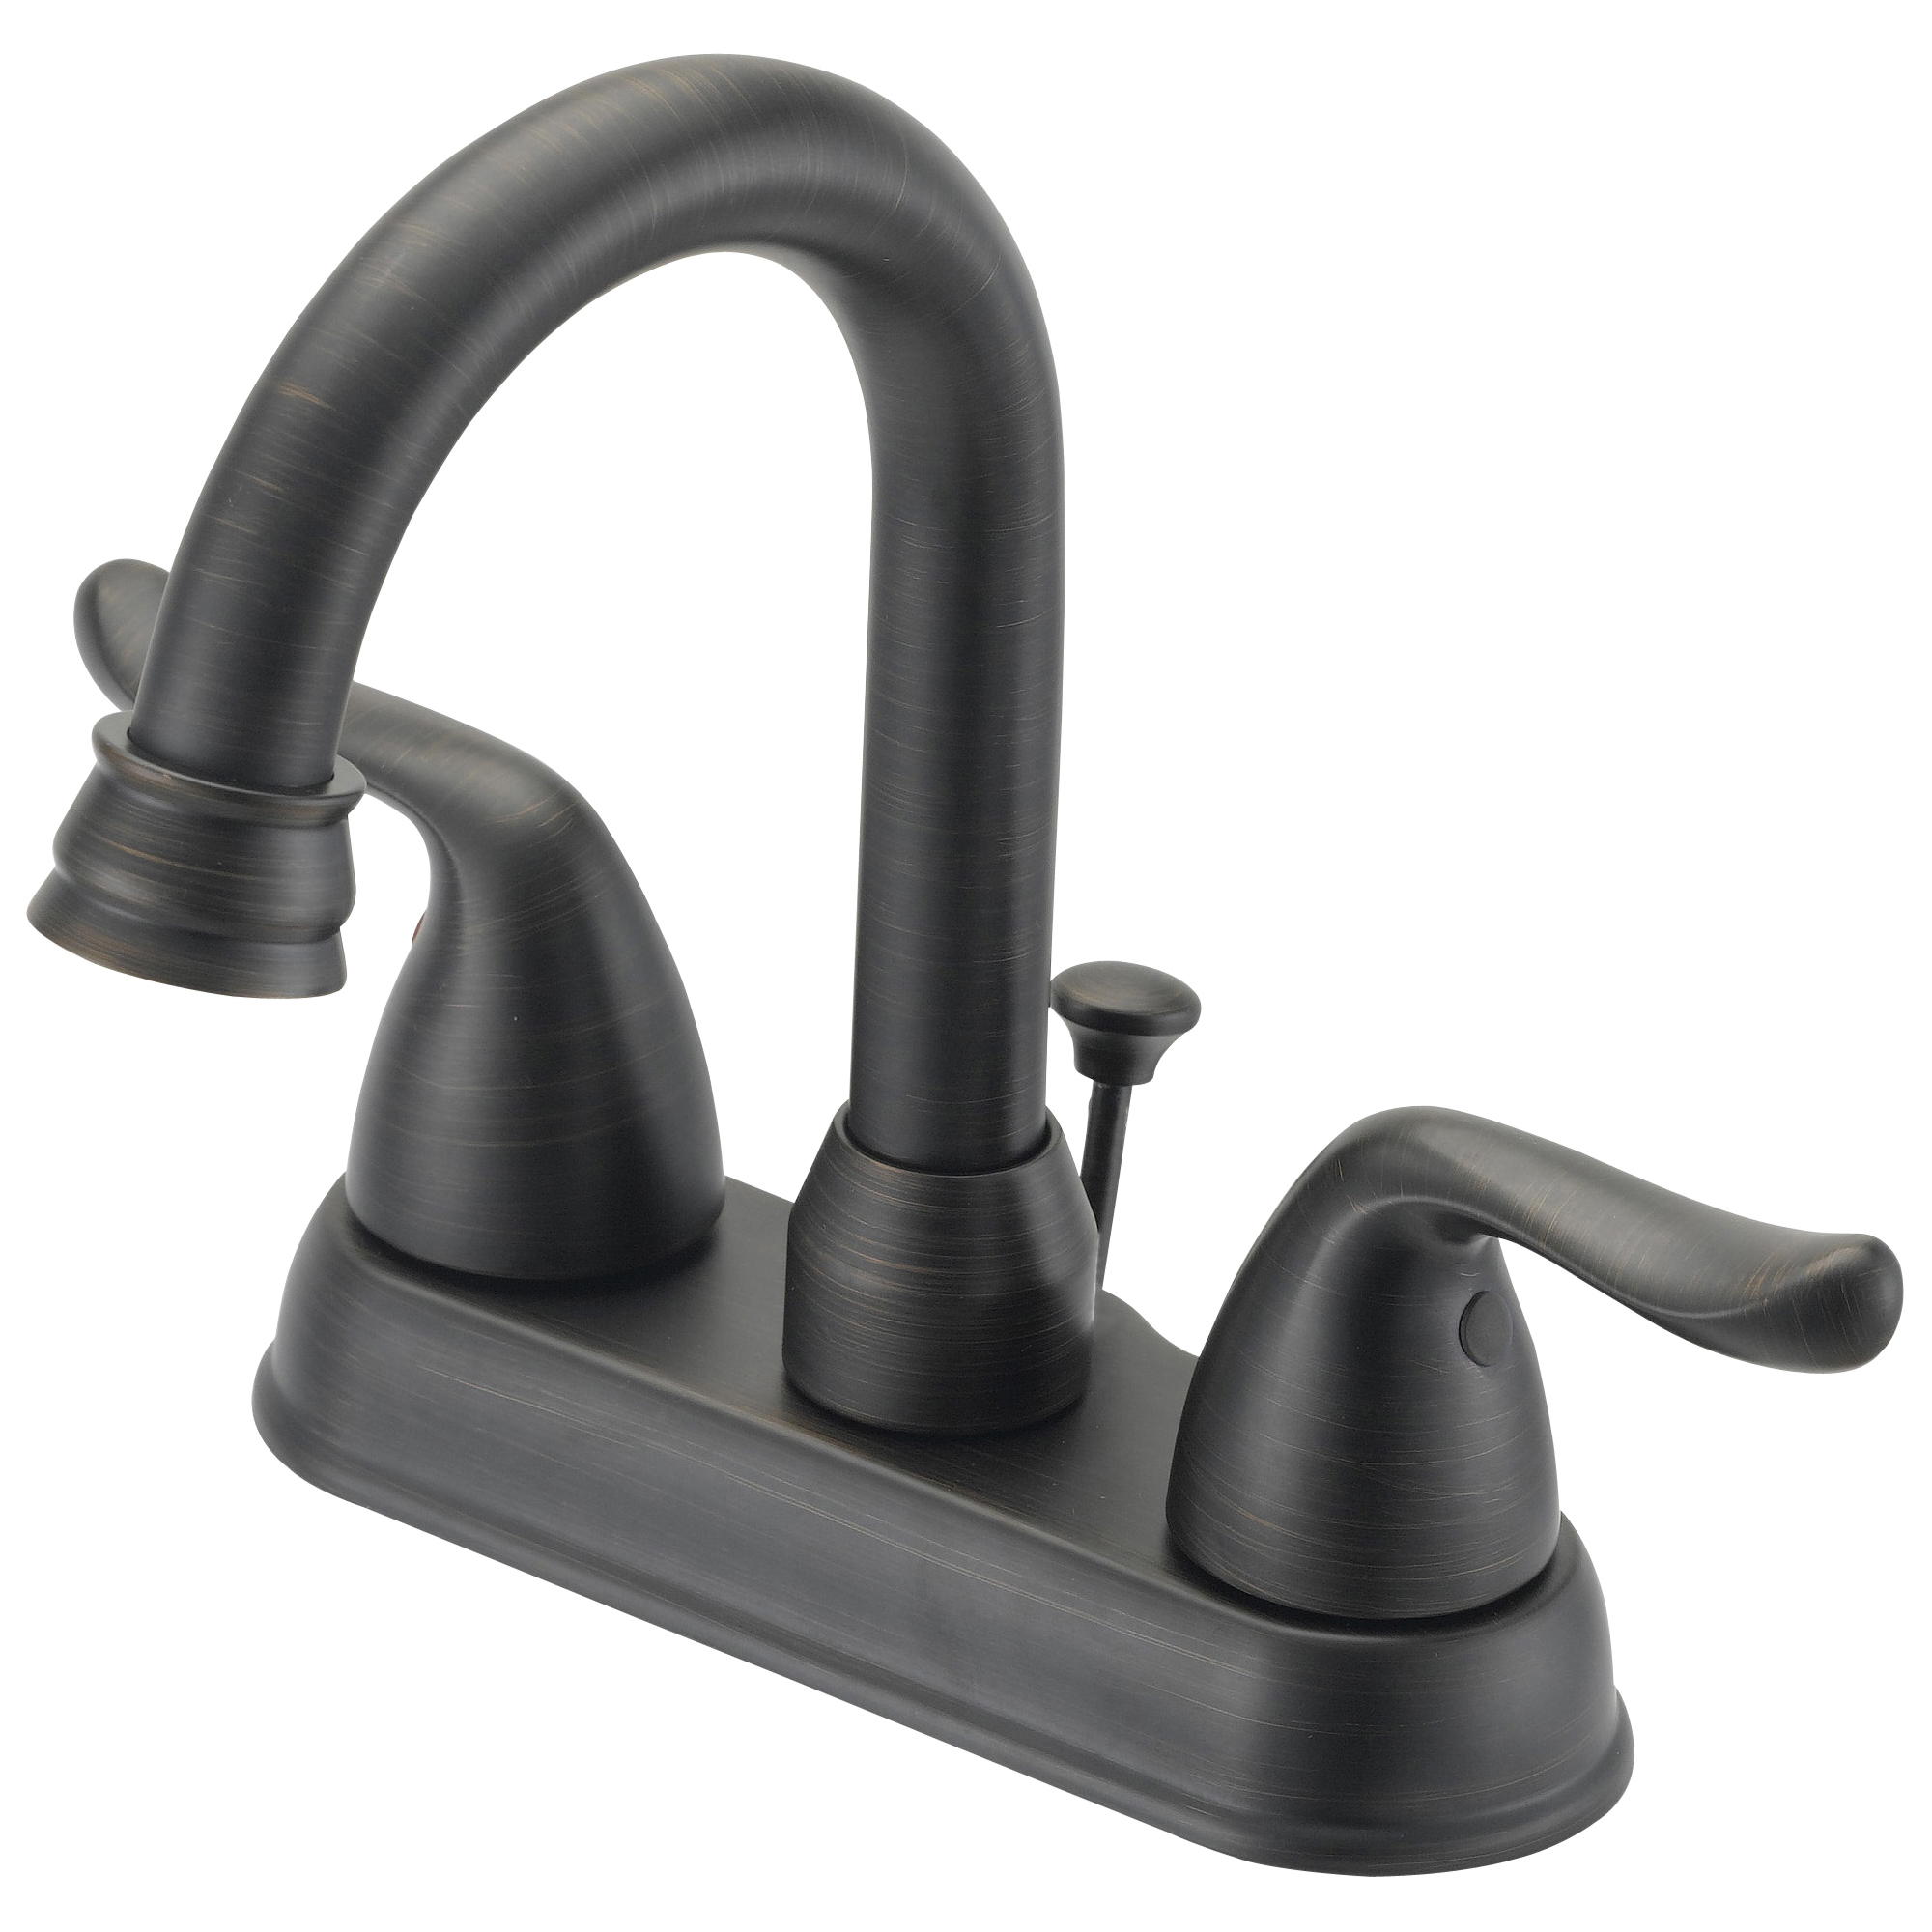 TQ-5111080RW Lavatory Faucet, 1.2 gpm, 2-Faucet Handle, 3-Faucet Hole, Metal/Plastic, Venetian Bronze